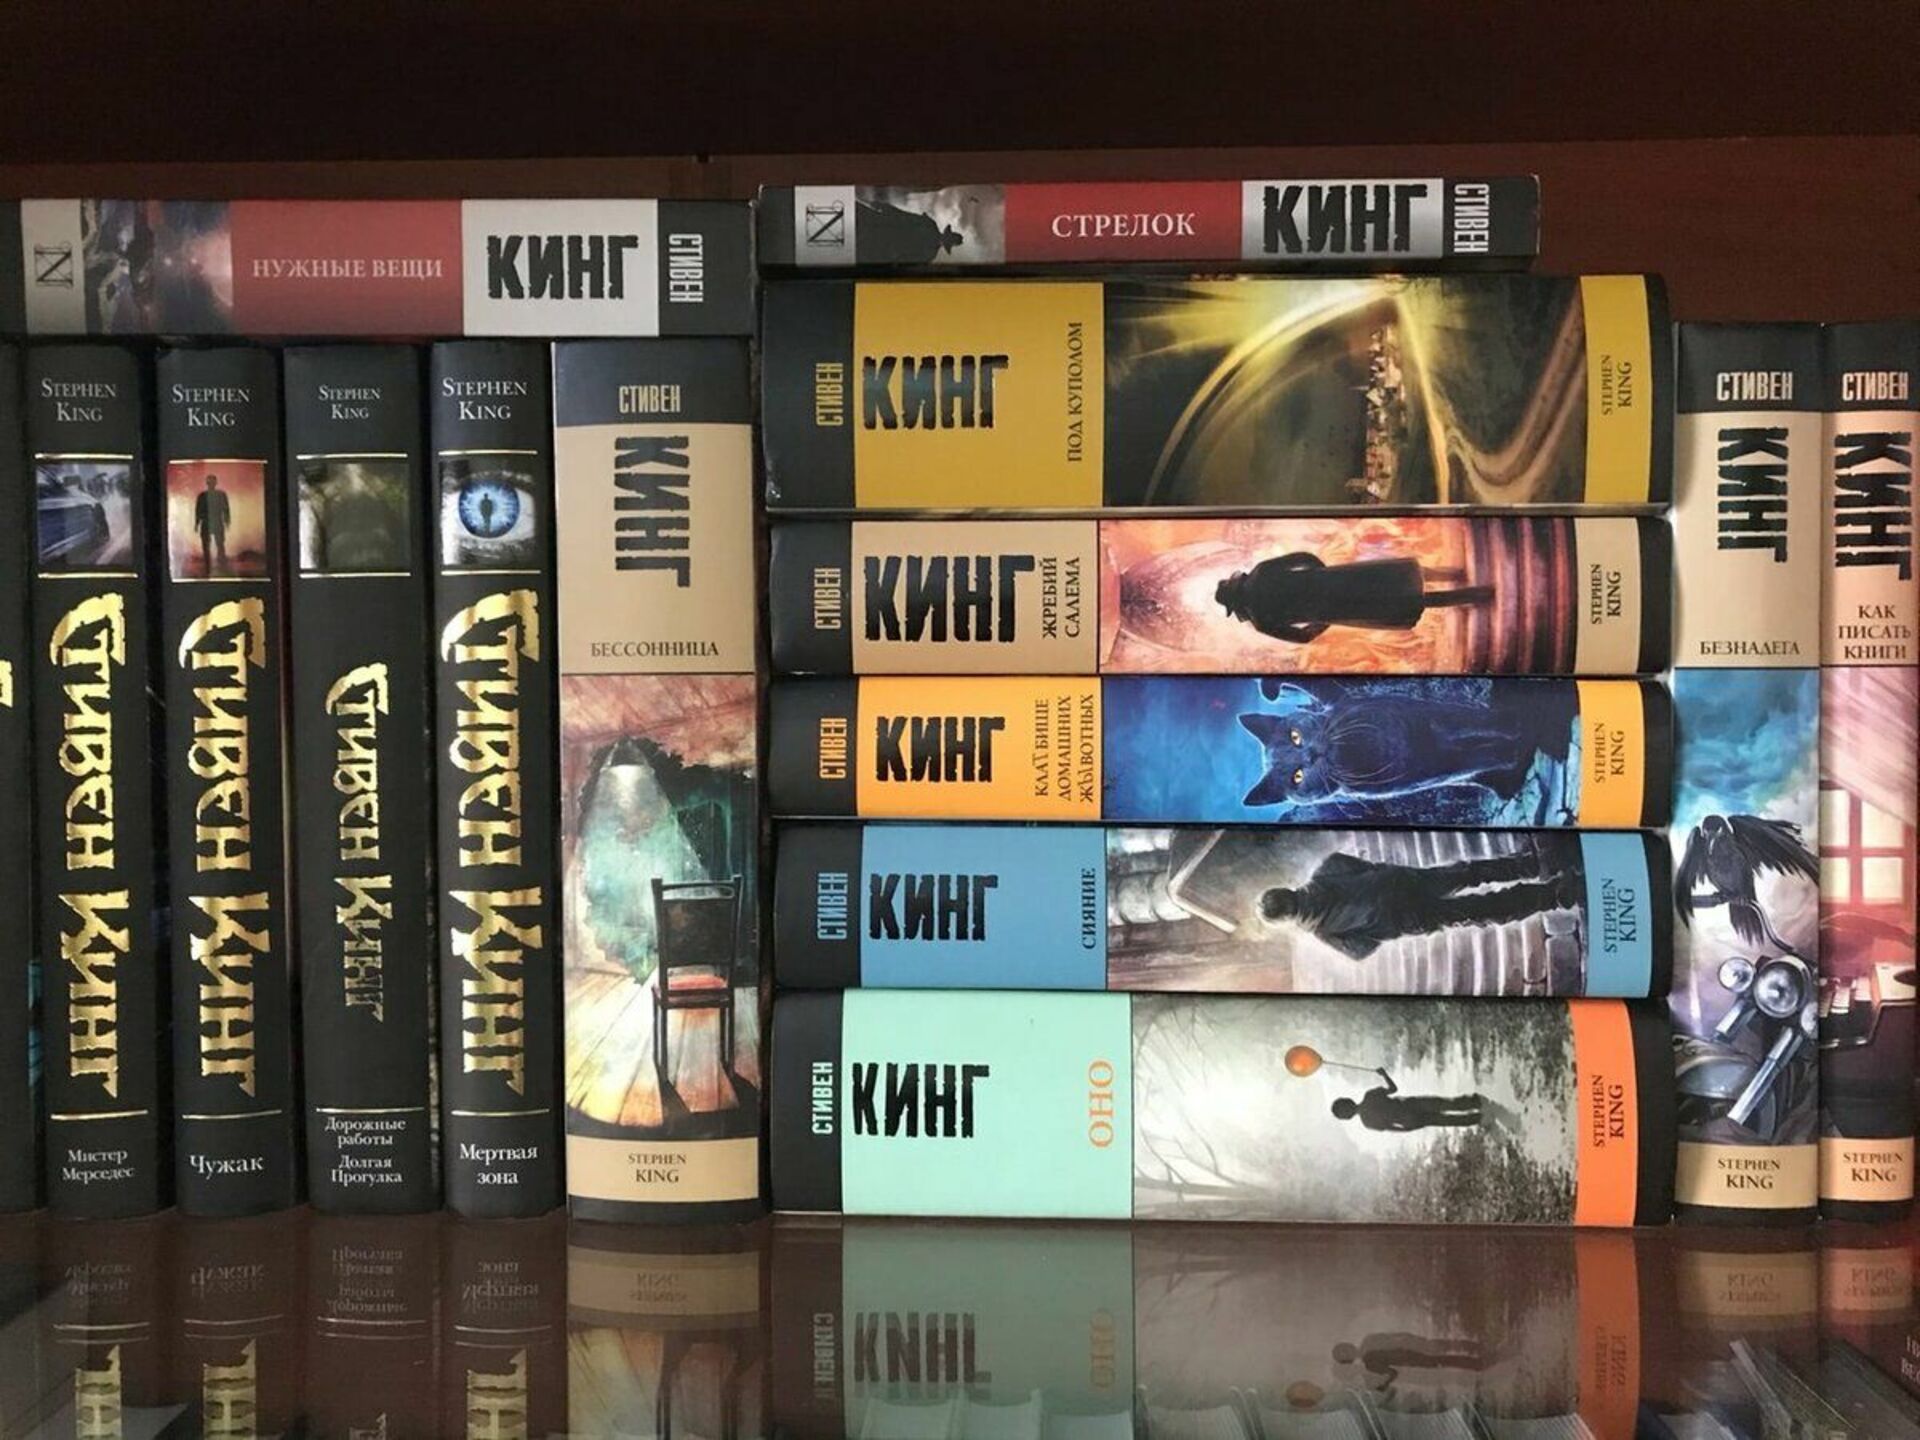 Лучшие произведения кинга. Полка с книгами Стивена Кинга. Коллекция книг Стивена Кинга.